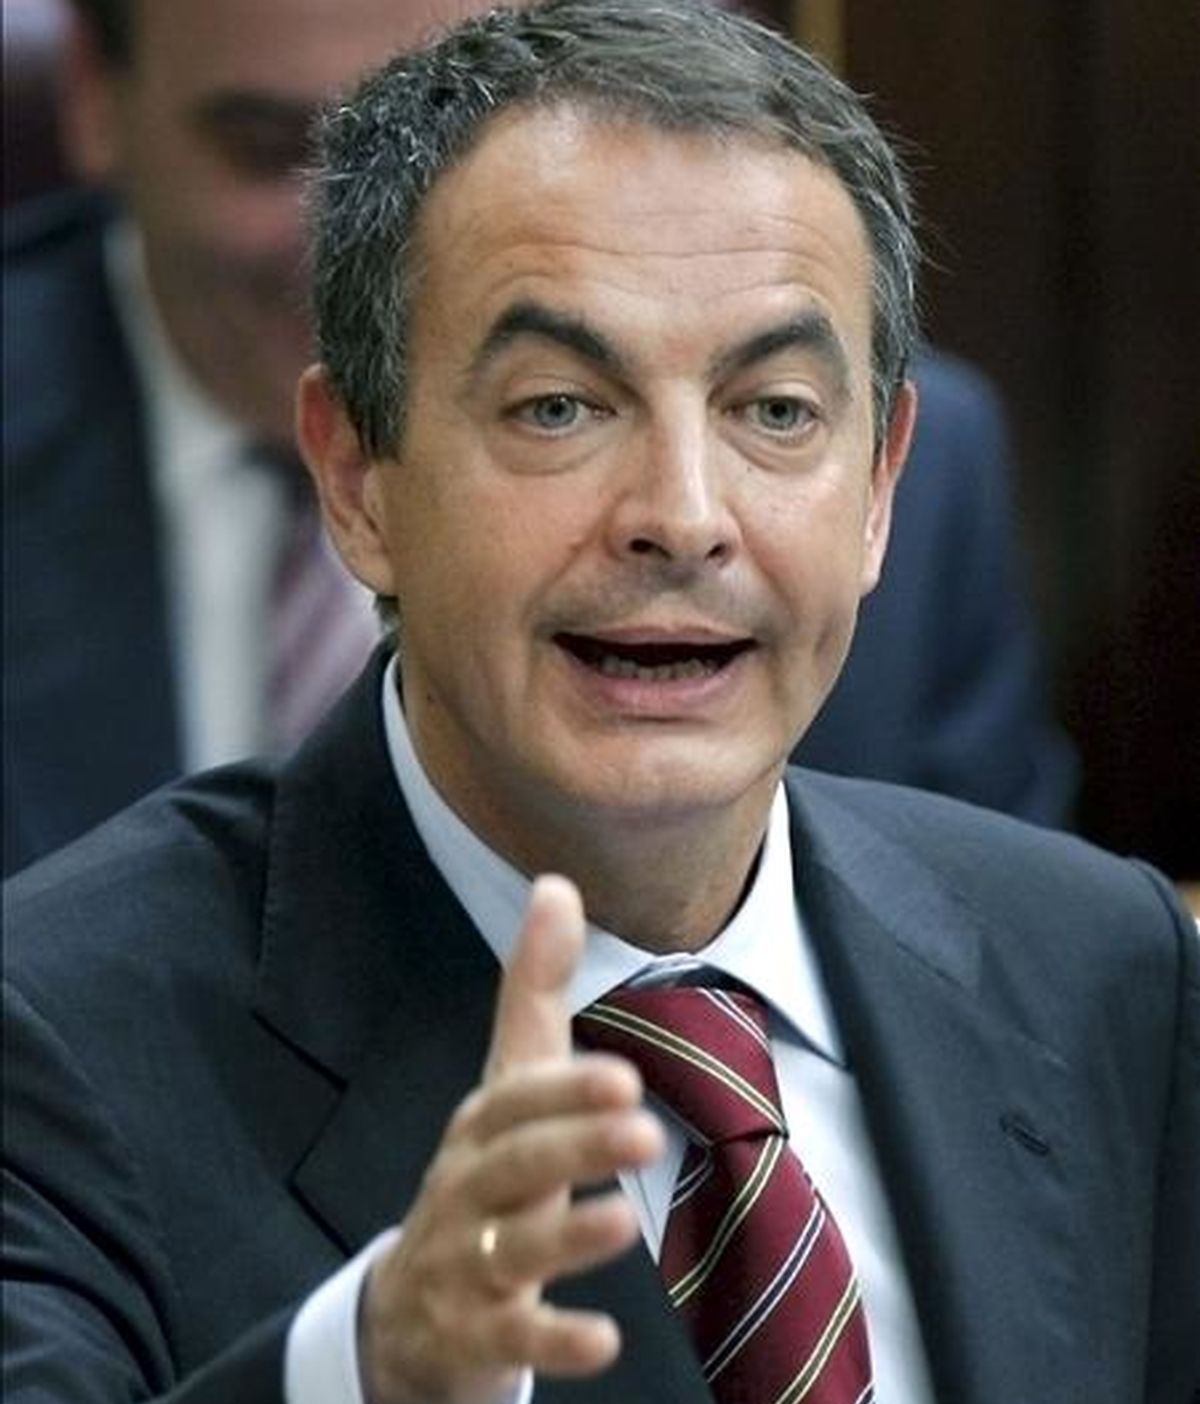 El presidente del Gobierno, José Luis Rodríguez Zapatero, responde a una pregunta durante la sesión de control al Ejecutivo, hoy en el pleno del Congreso de los Diputados. EFE